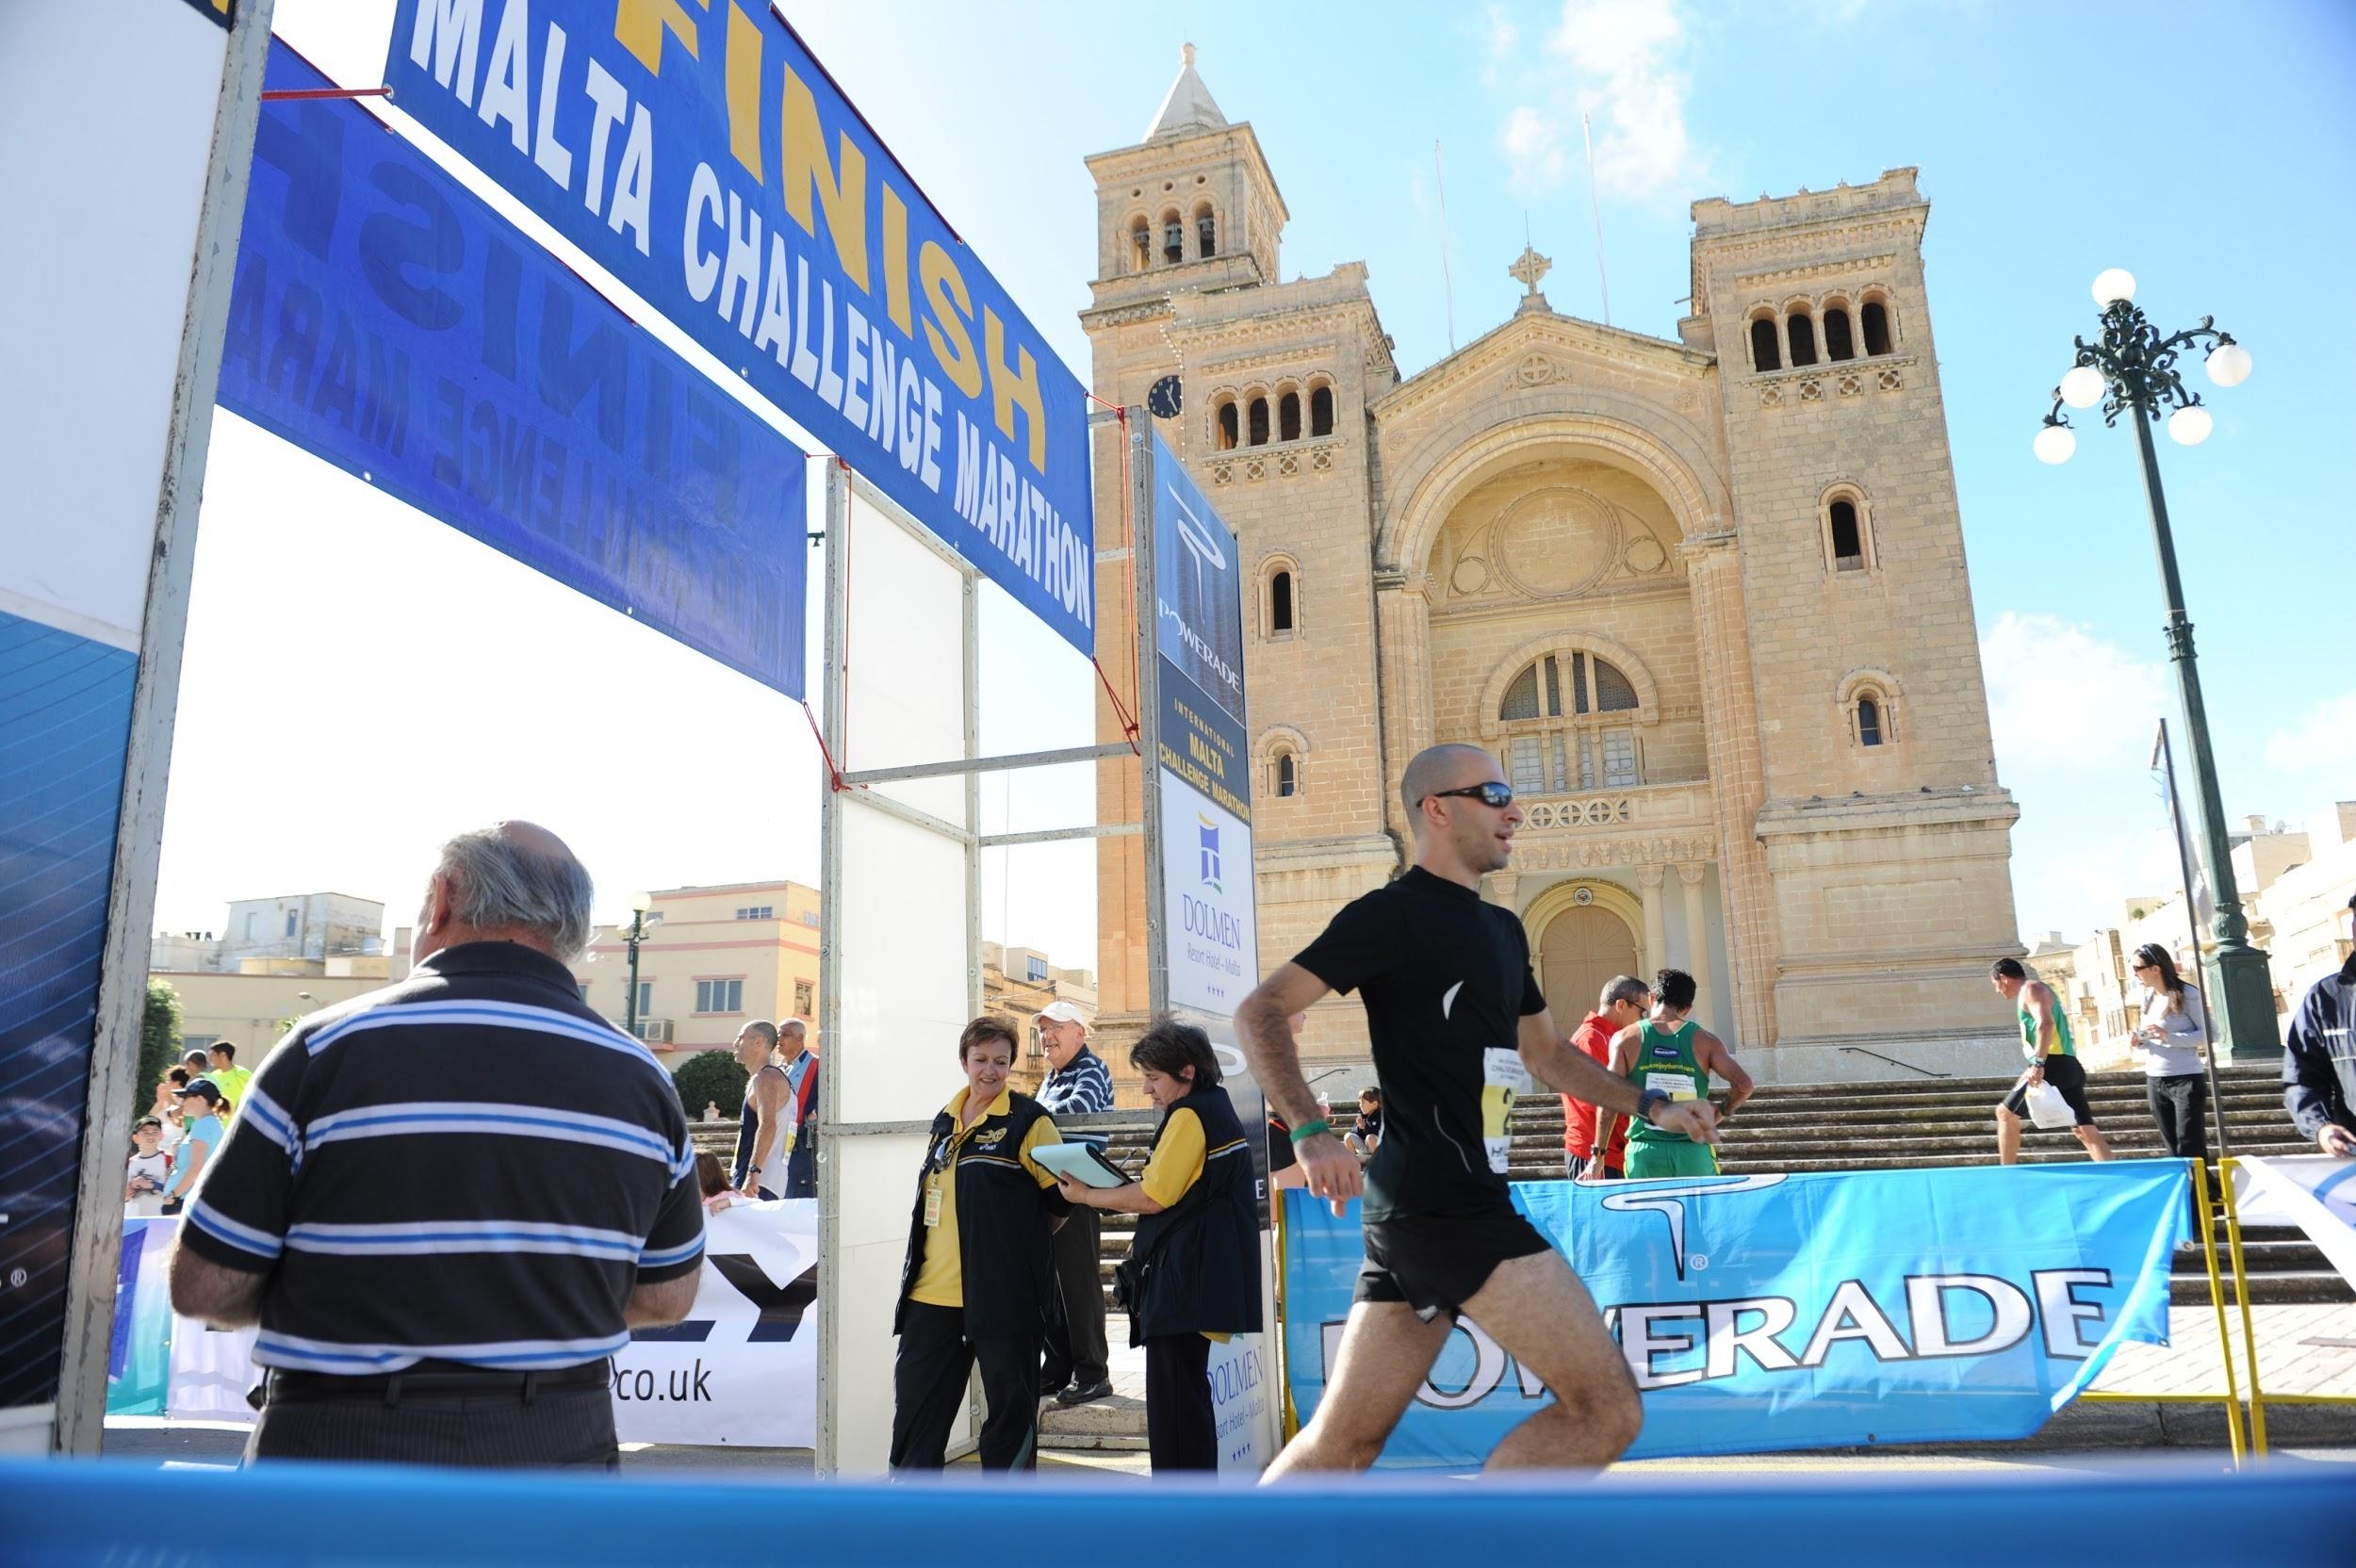 Malta Marathon

